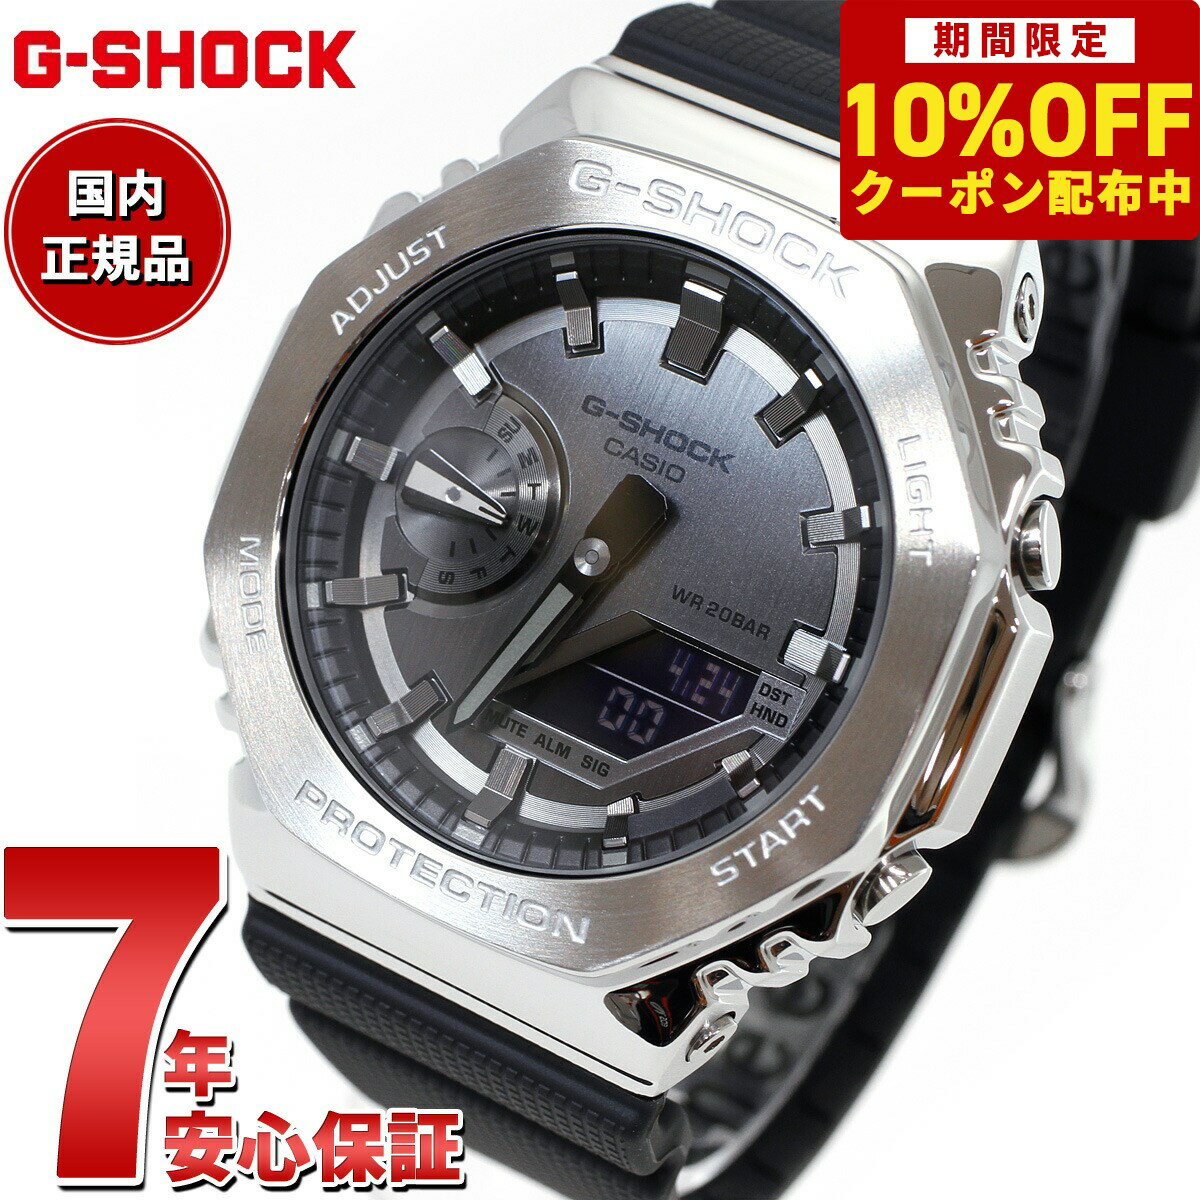 G-SHOCK Gショック メタル カシオ CASIO 腕時計 メンズ グレー ブラック GM-2100-1AJF